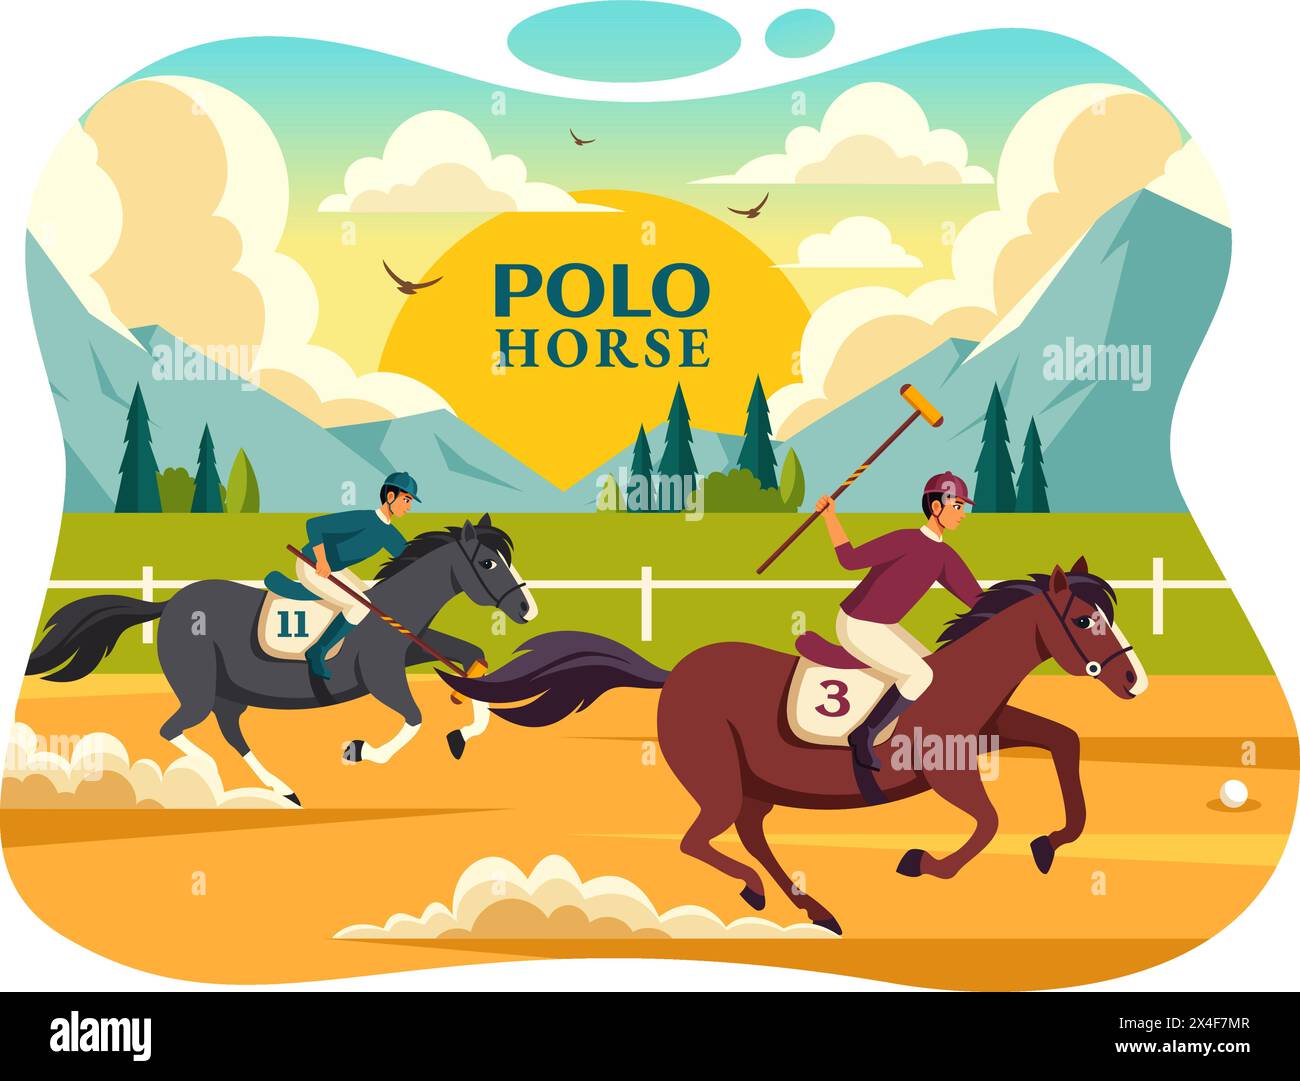 Polo Horse Sports illustration vectorielle avec le cheval d'équitation de joueur et l'équipement d'utilisation de bâton de maintien mis en compétition dans le fond de dessin animé plat Illustration de Vecteur